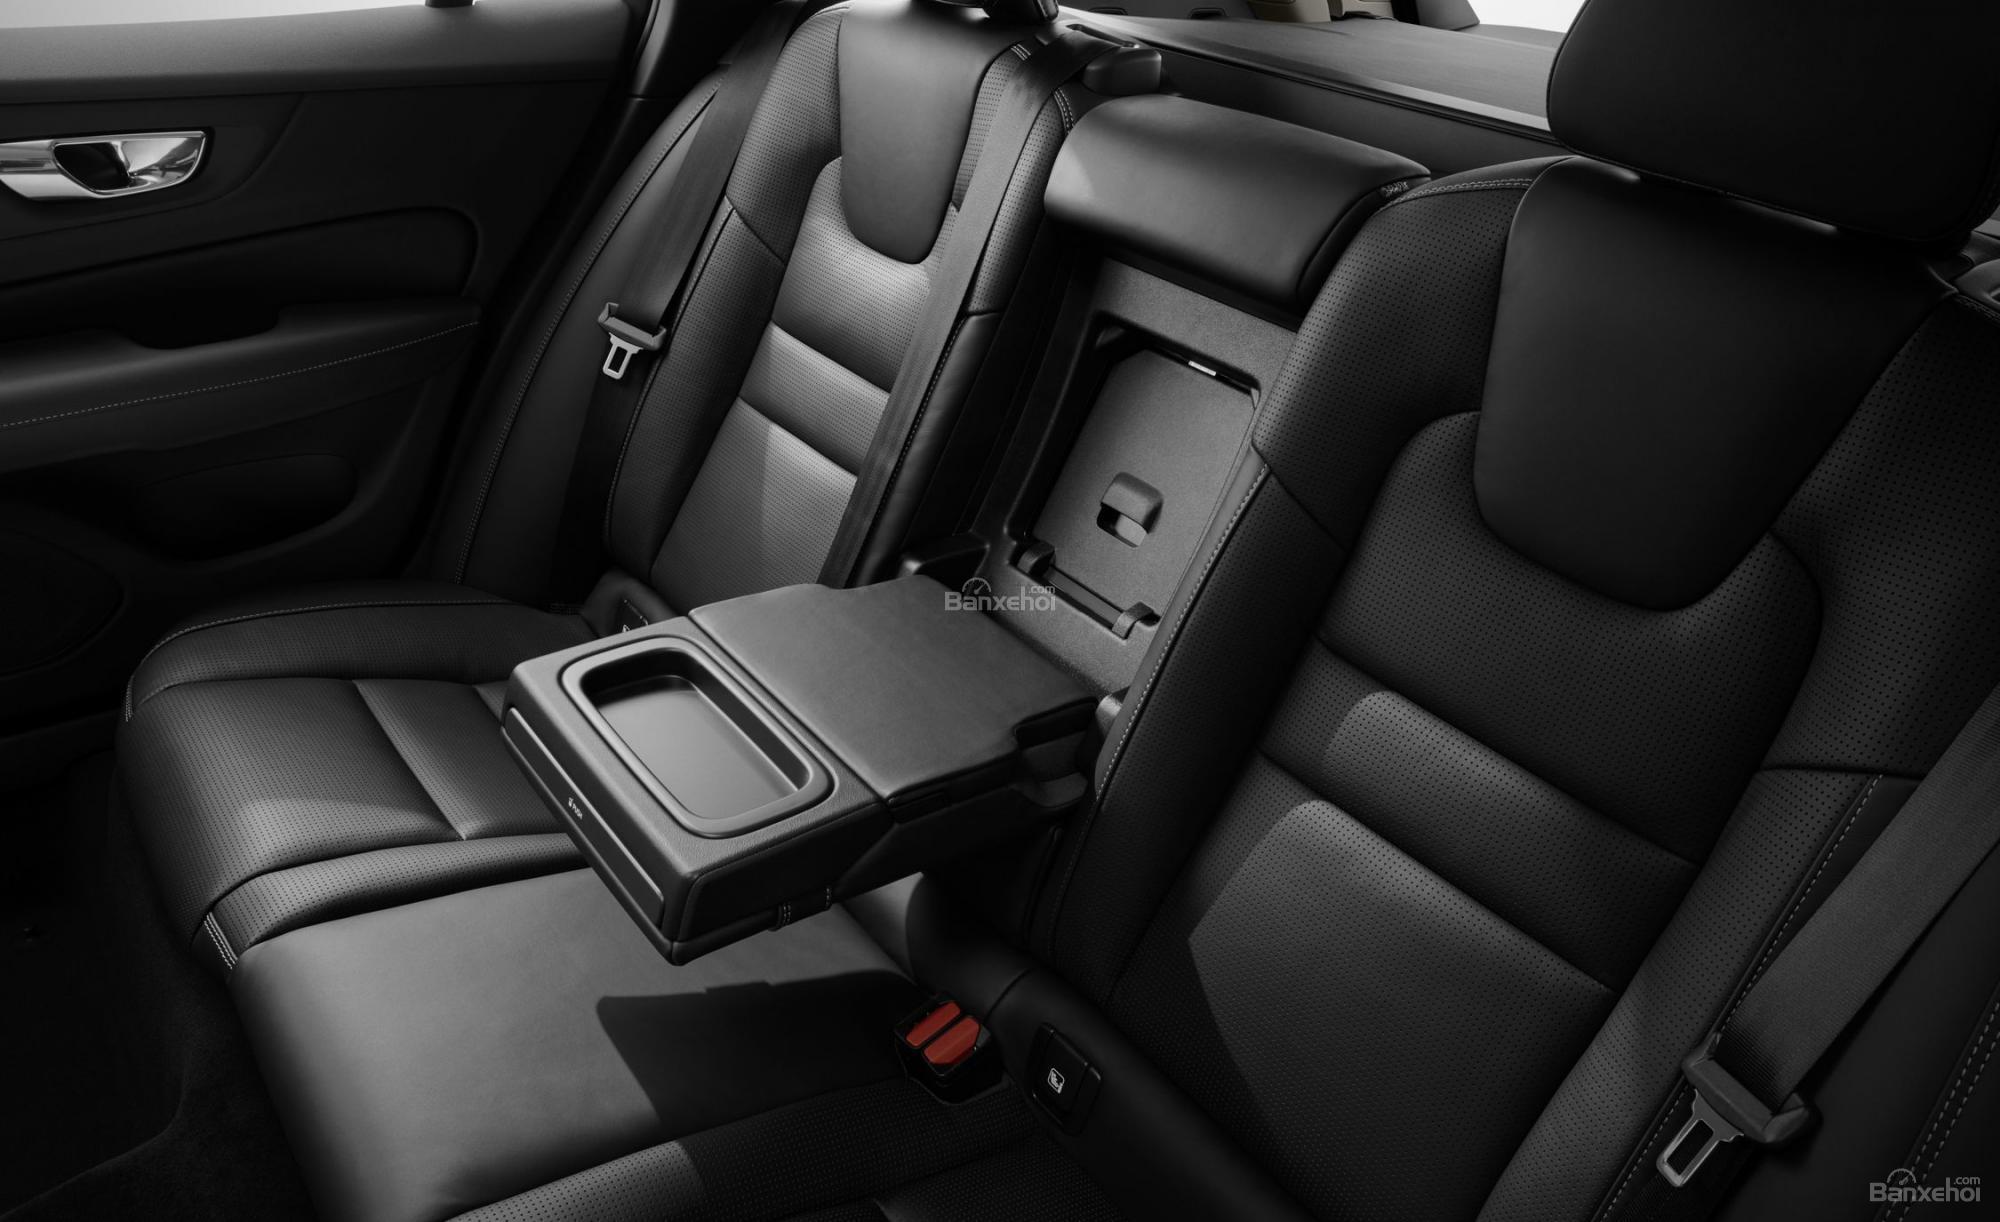 Đánh giá xe Volvo V60 2019 về hệ thống ghế ngồi 2